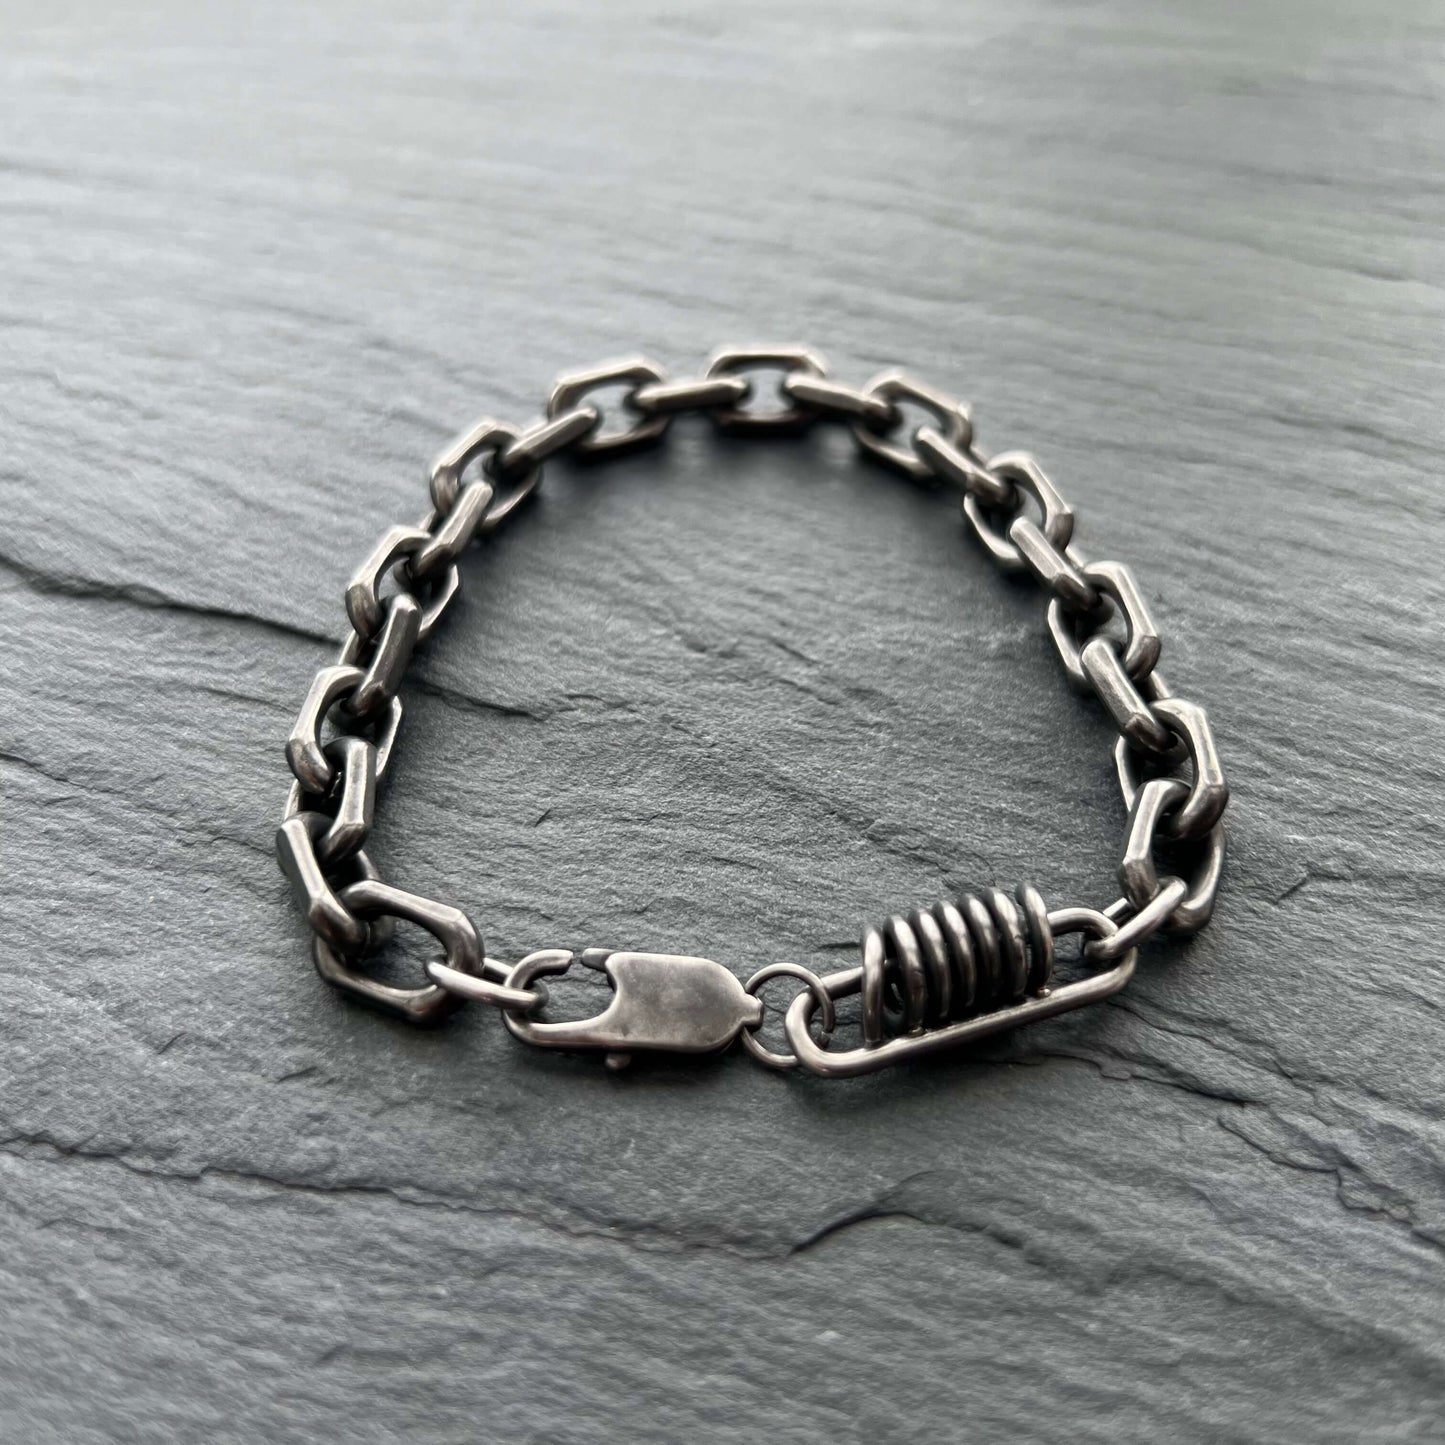 Rustic Cable Bracelet